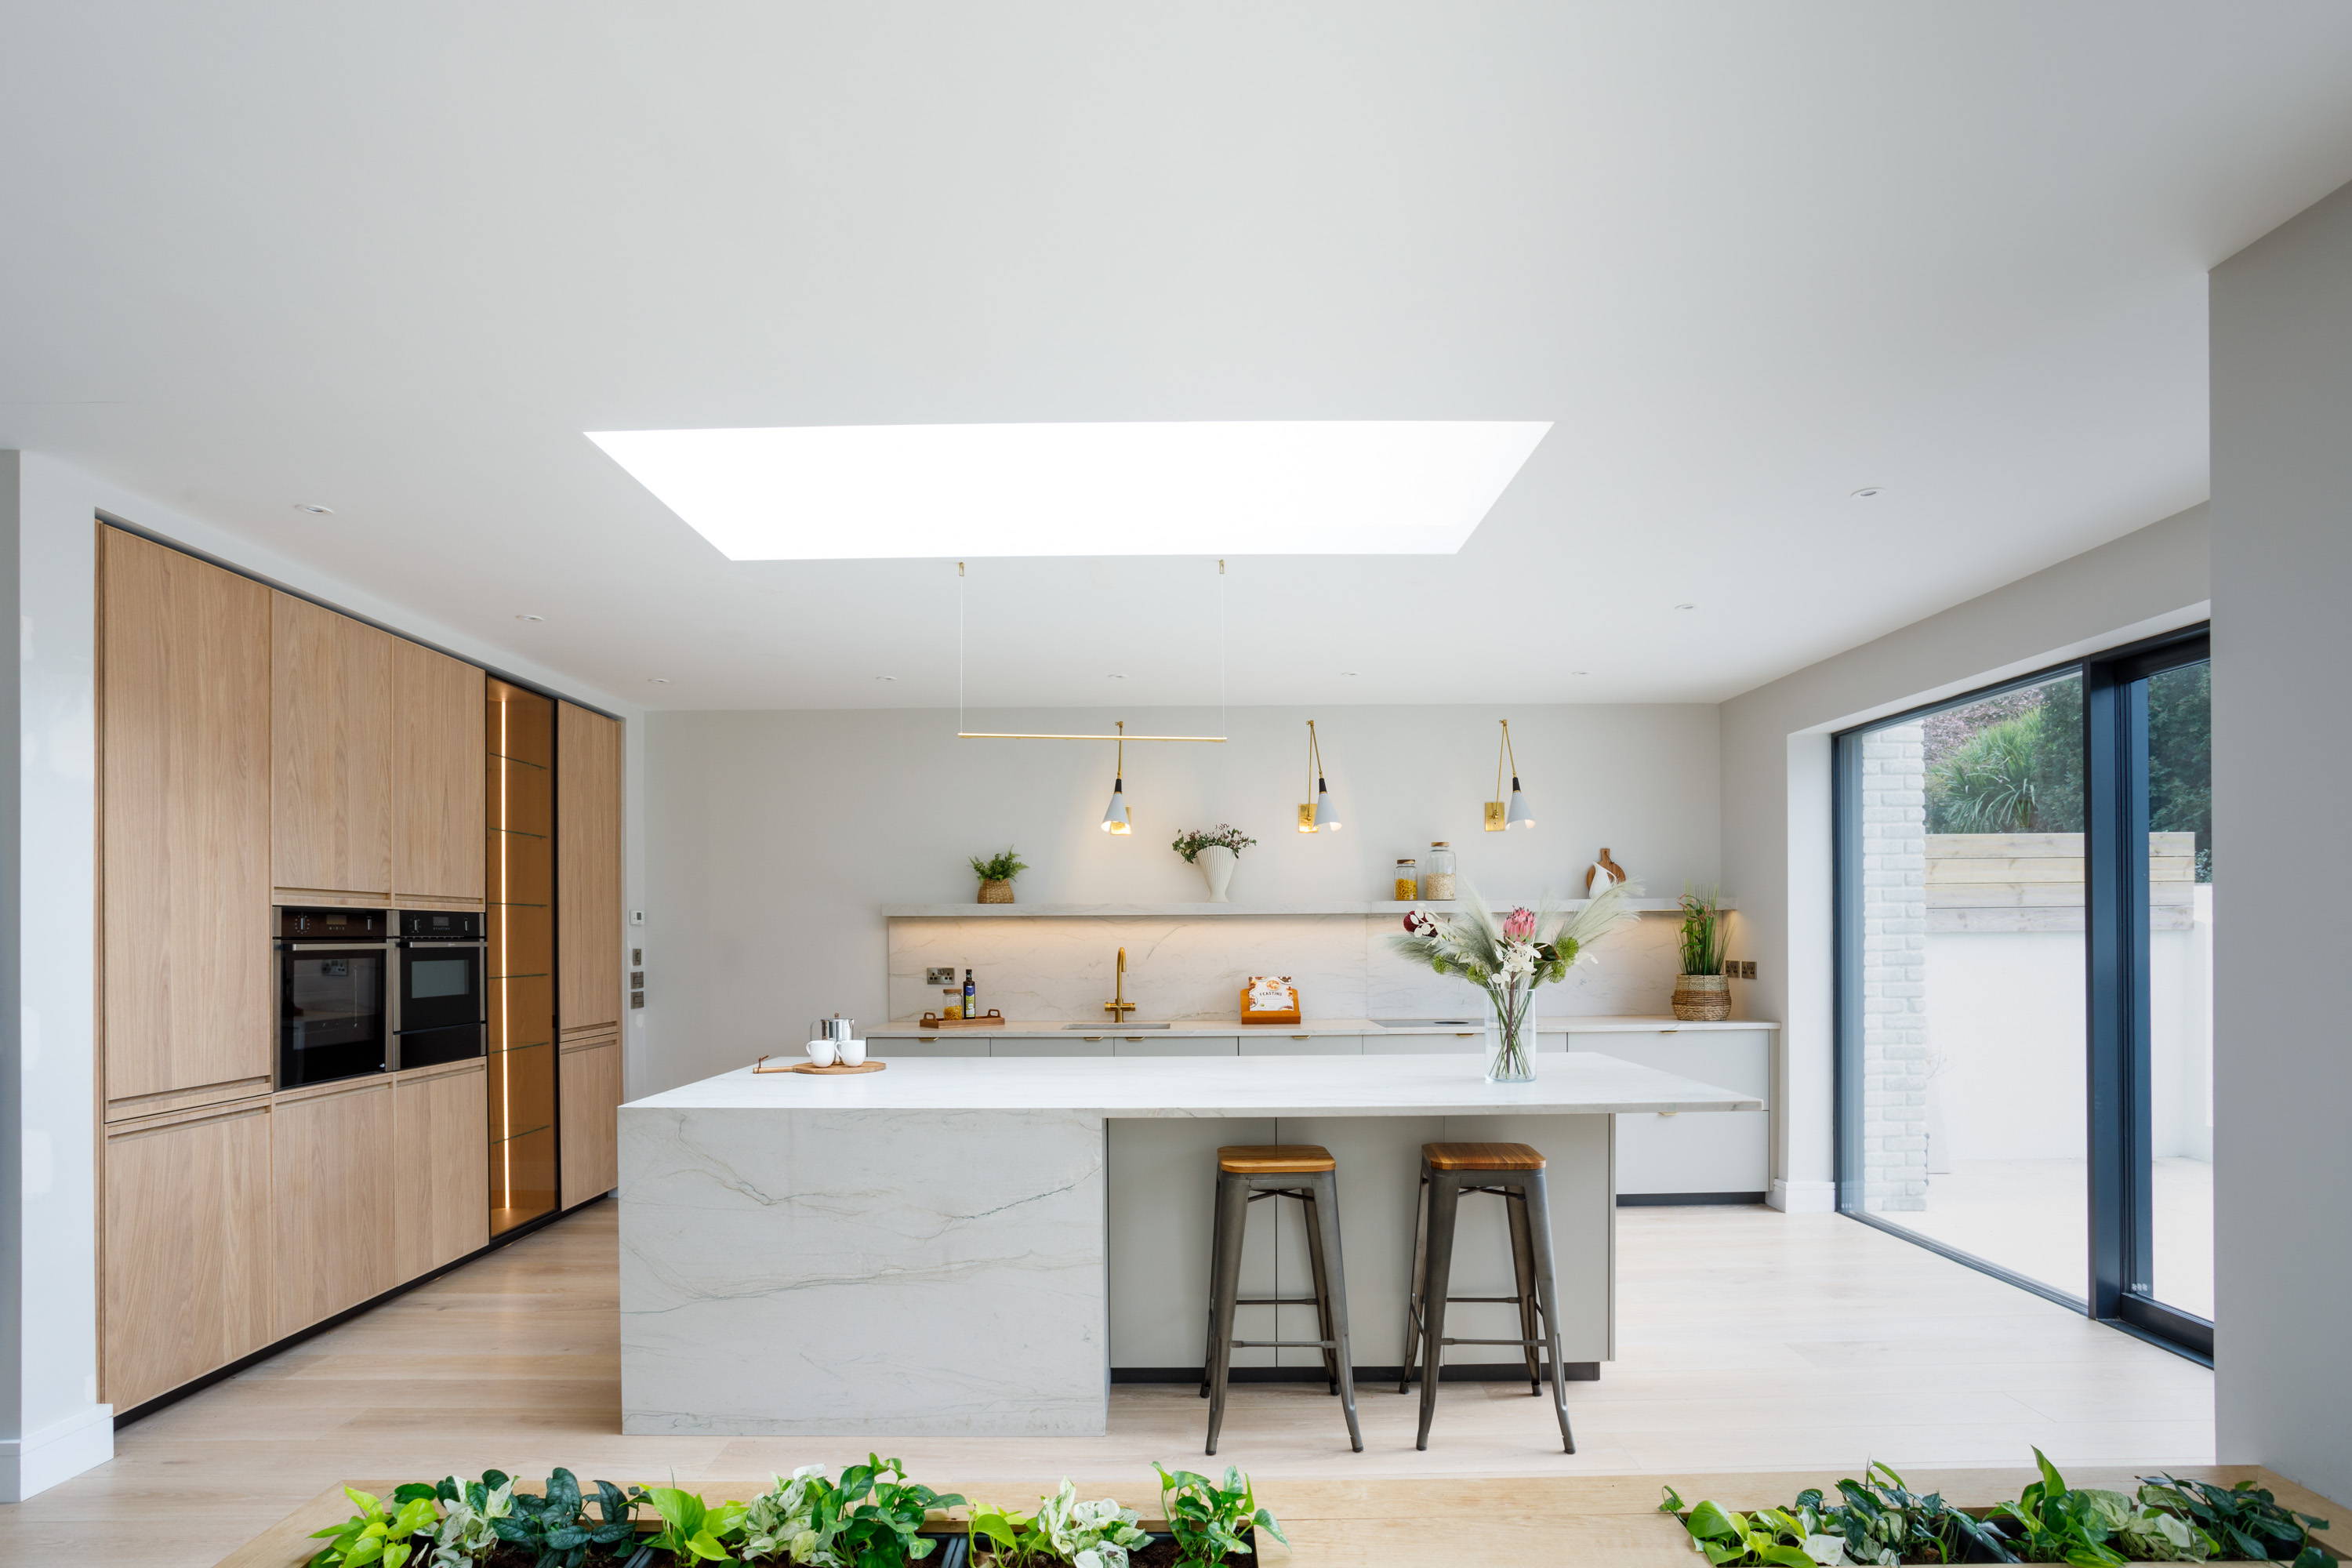 Bright, Airy Modern Kitchen